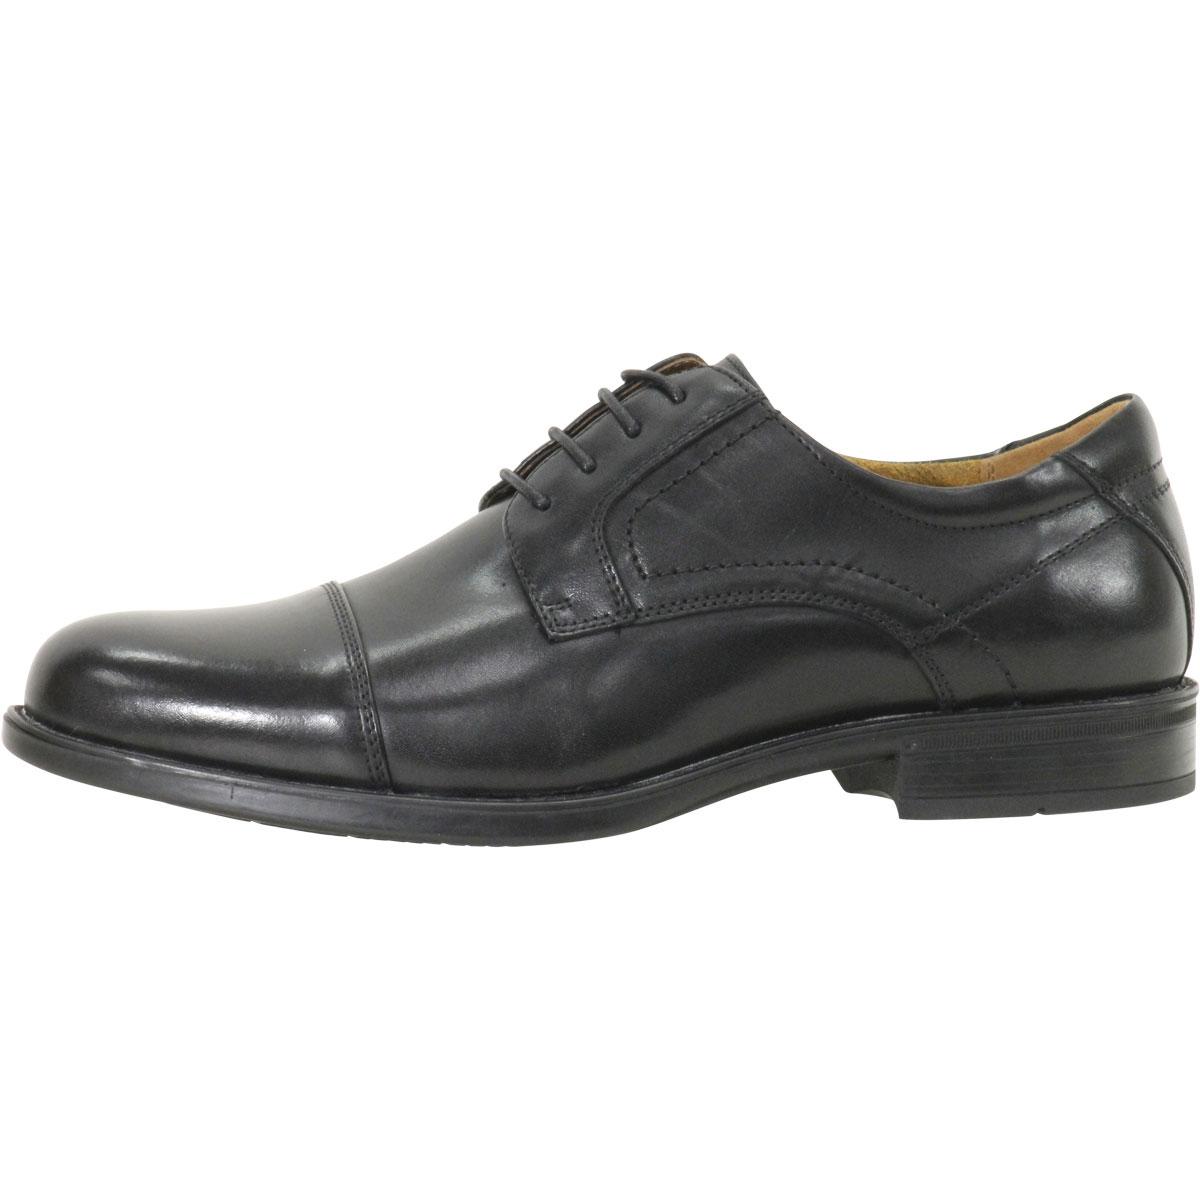 Florsheim Comfortech Men's Midtown Cap Toe Oxfords Shoes | JoyLot.com